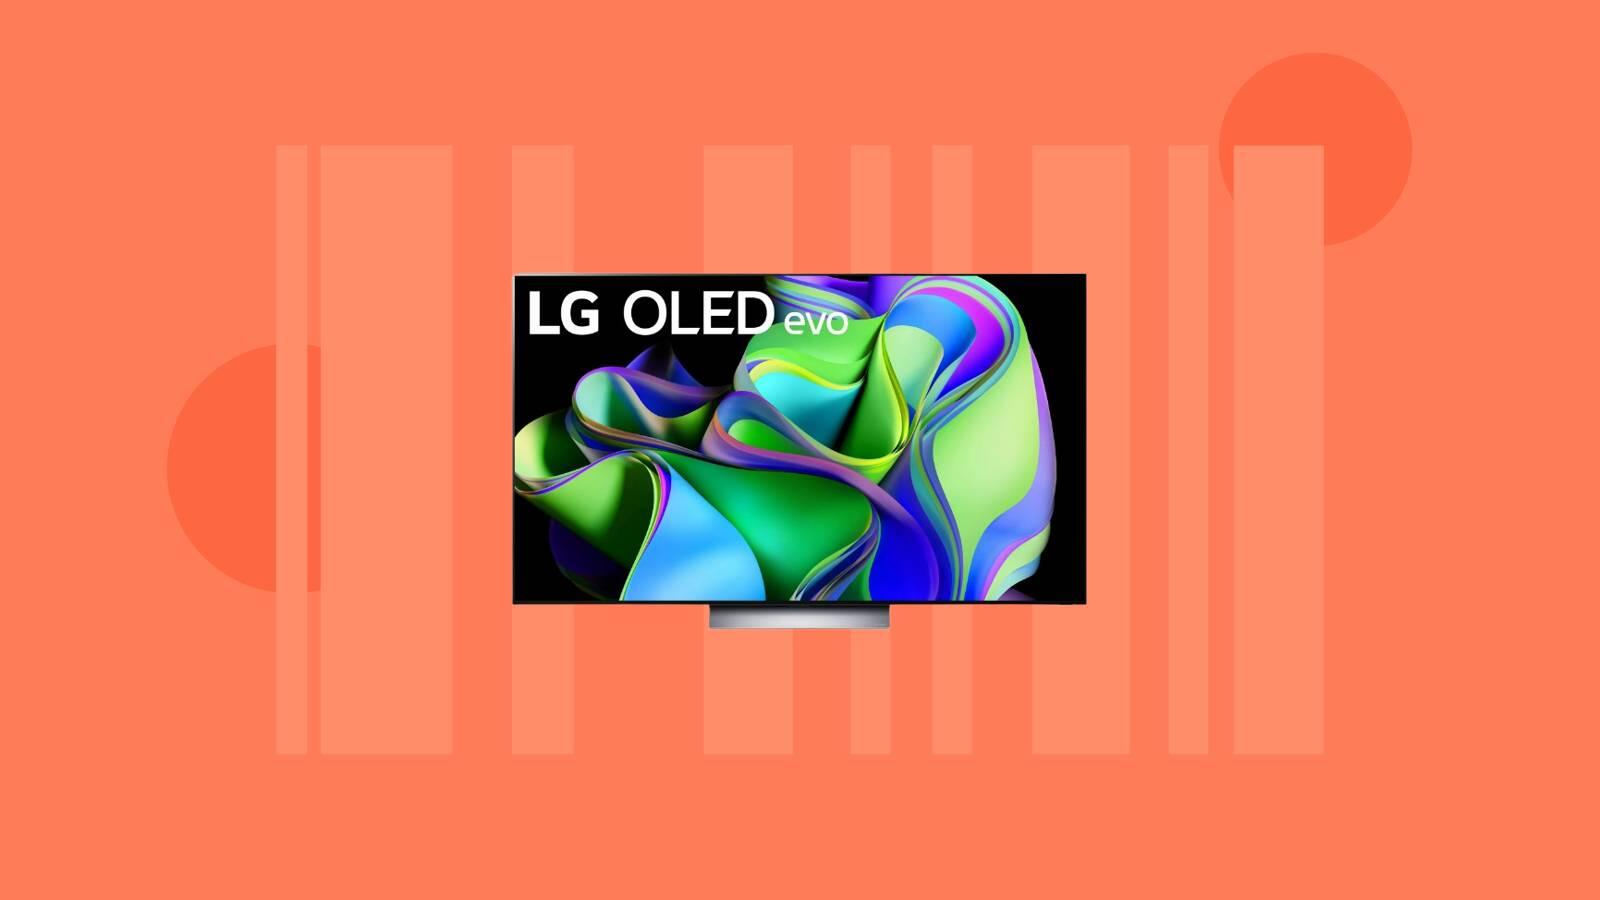 Corre a MediaMarkt: este televisor LG OLED de alta gama está de liquidación  a precio mínimo